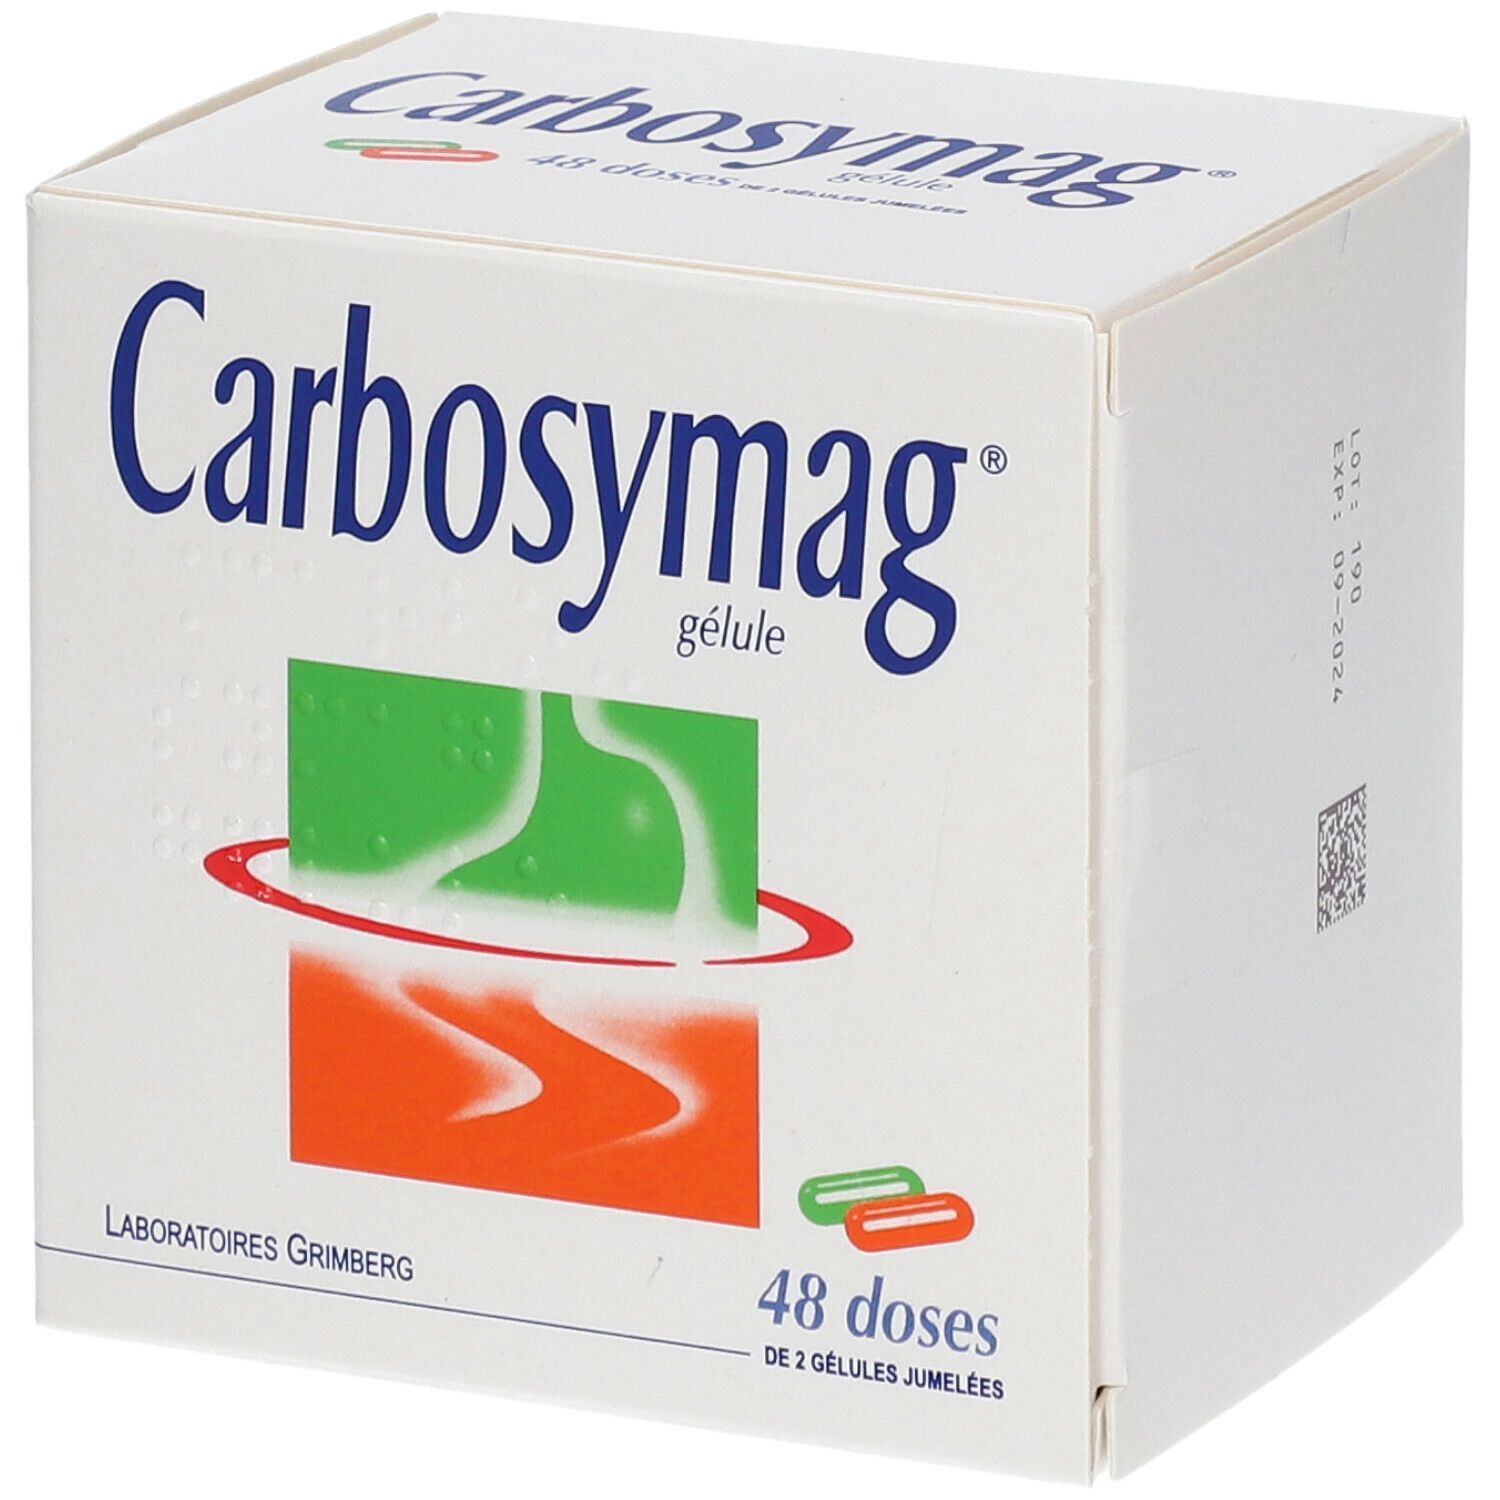 Carbosymag®